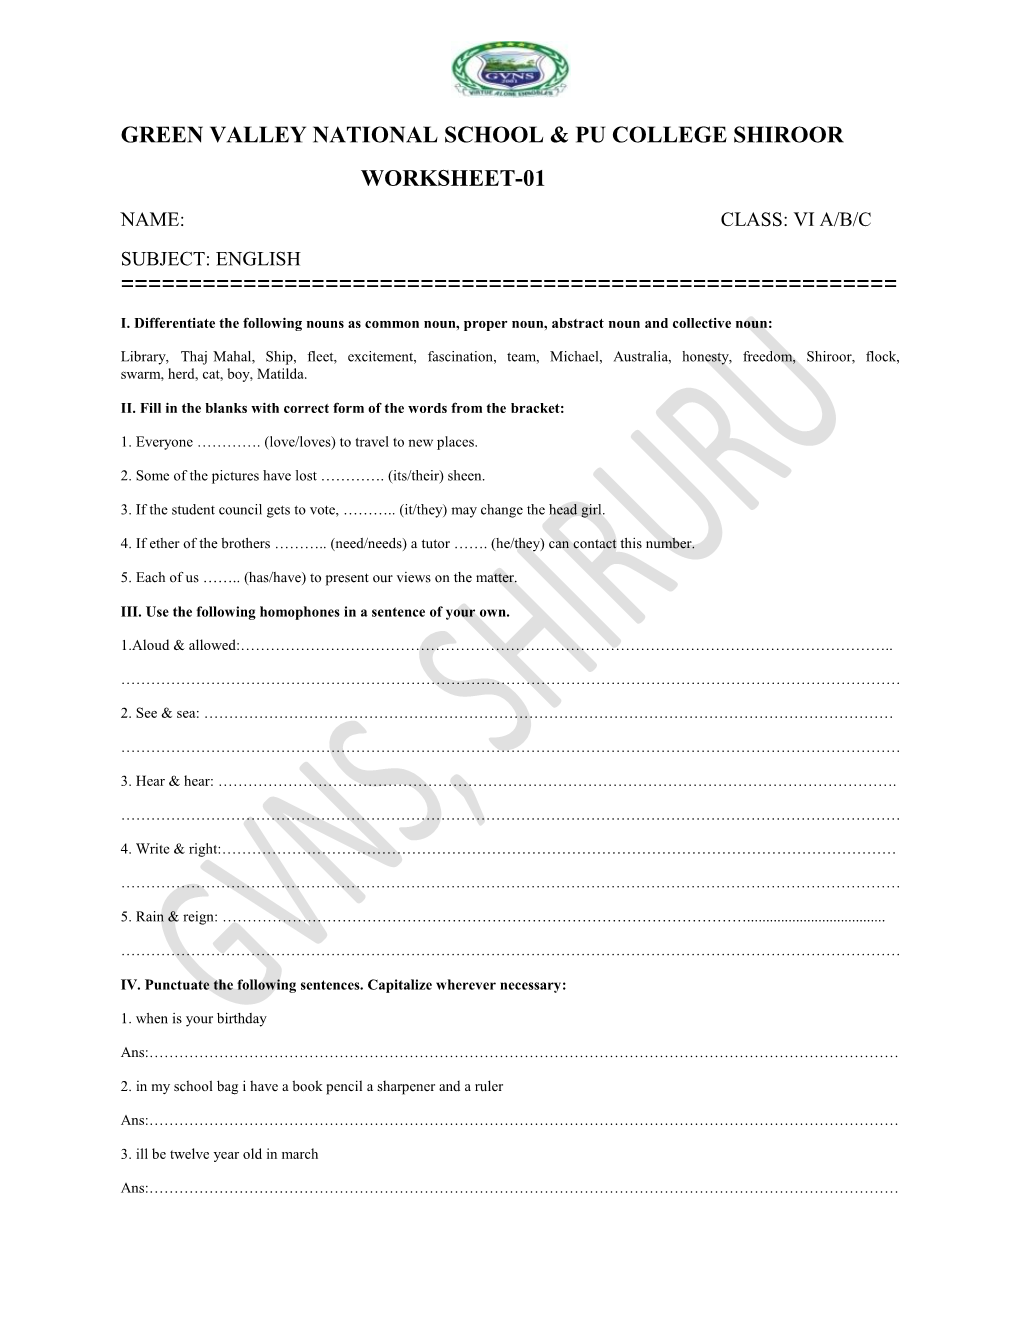 Green Valley National School & Pu College Shiroor Worksheet-01